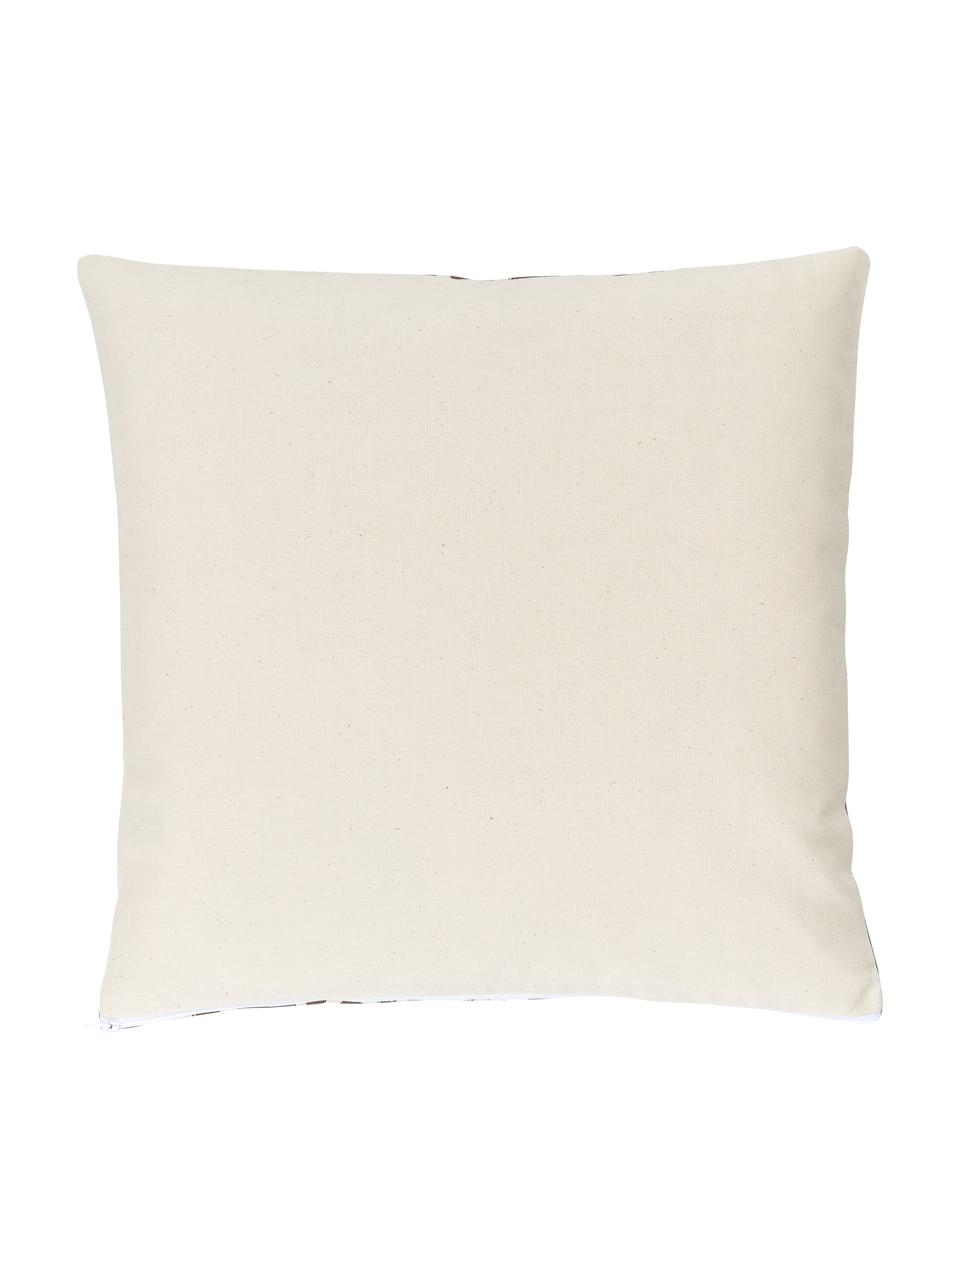 Federa arredo boho color bianco crema/marrone Deliah, 100% cotone, Marrone, Larg. 45 x Lung. 45 cm